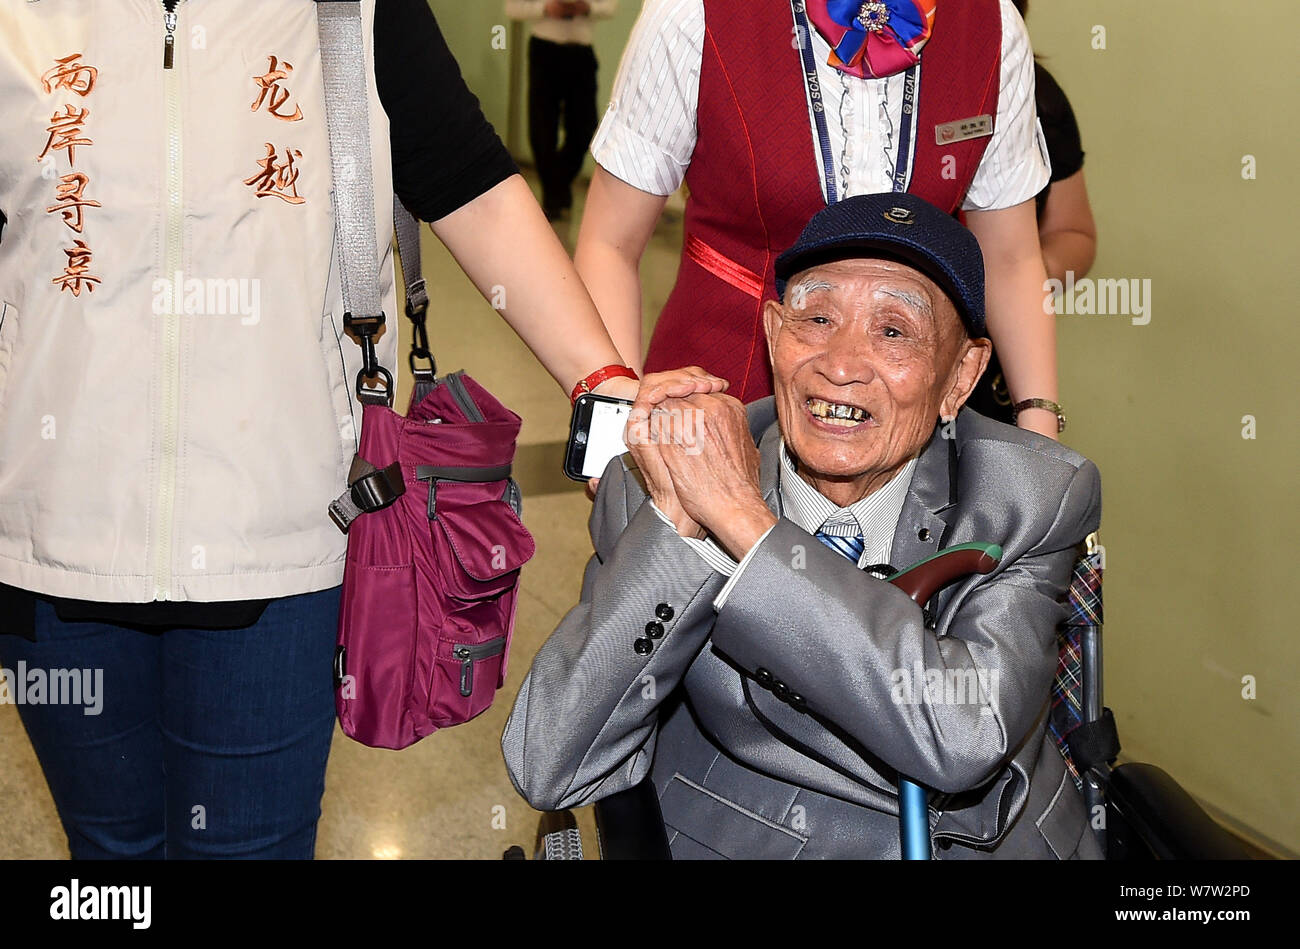 Il 97-anno-vecchio veterano cinese Hu Dingyuan reagisce al pubblico in una sedia a rotelle come egli arriva a Chengdu Shuangliu Aeroporto Internazionale di Chengdu, Foto Stock